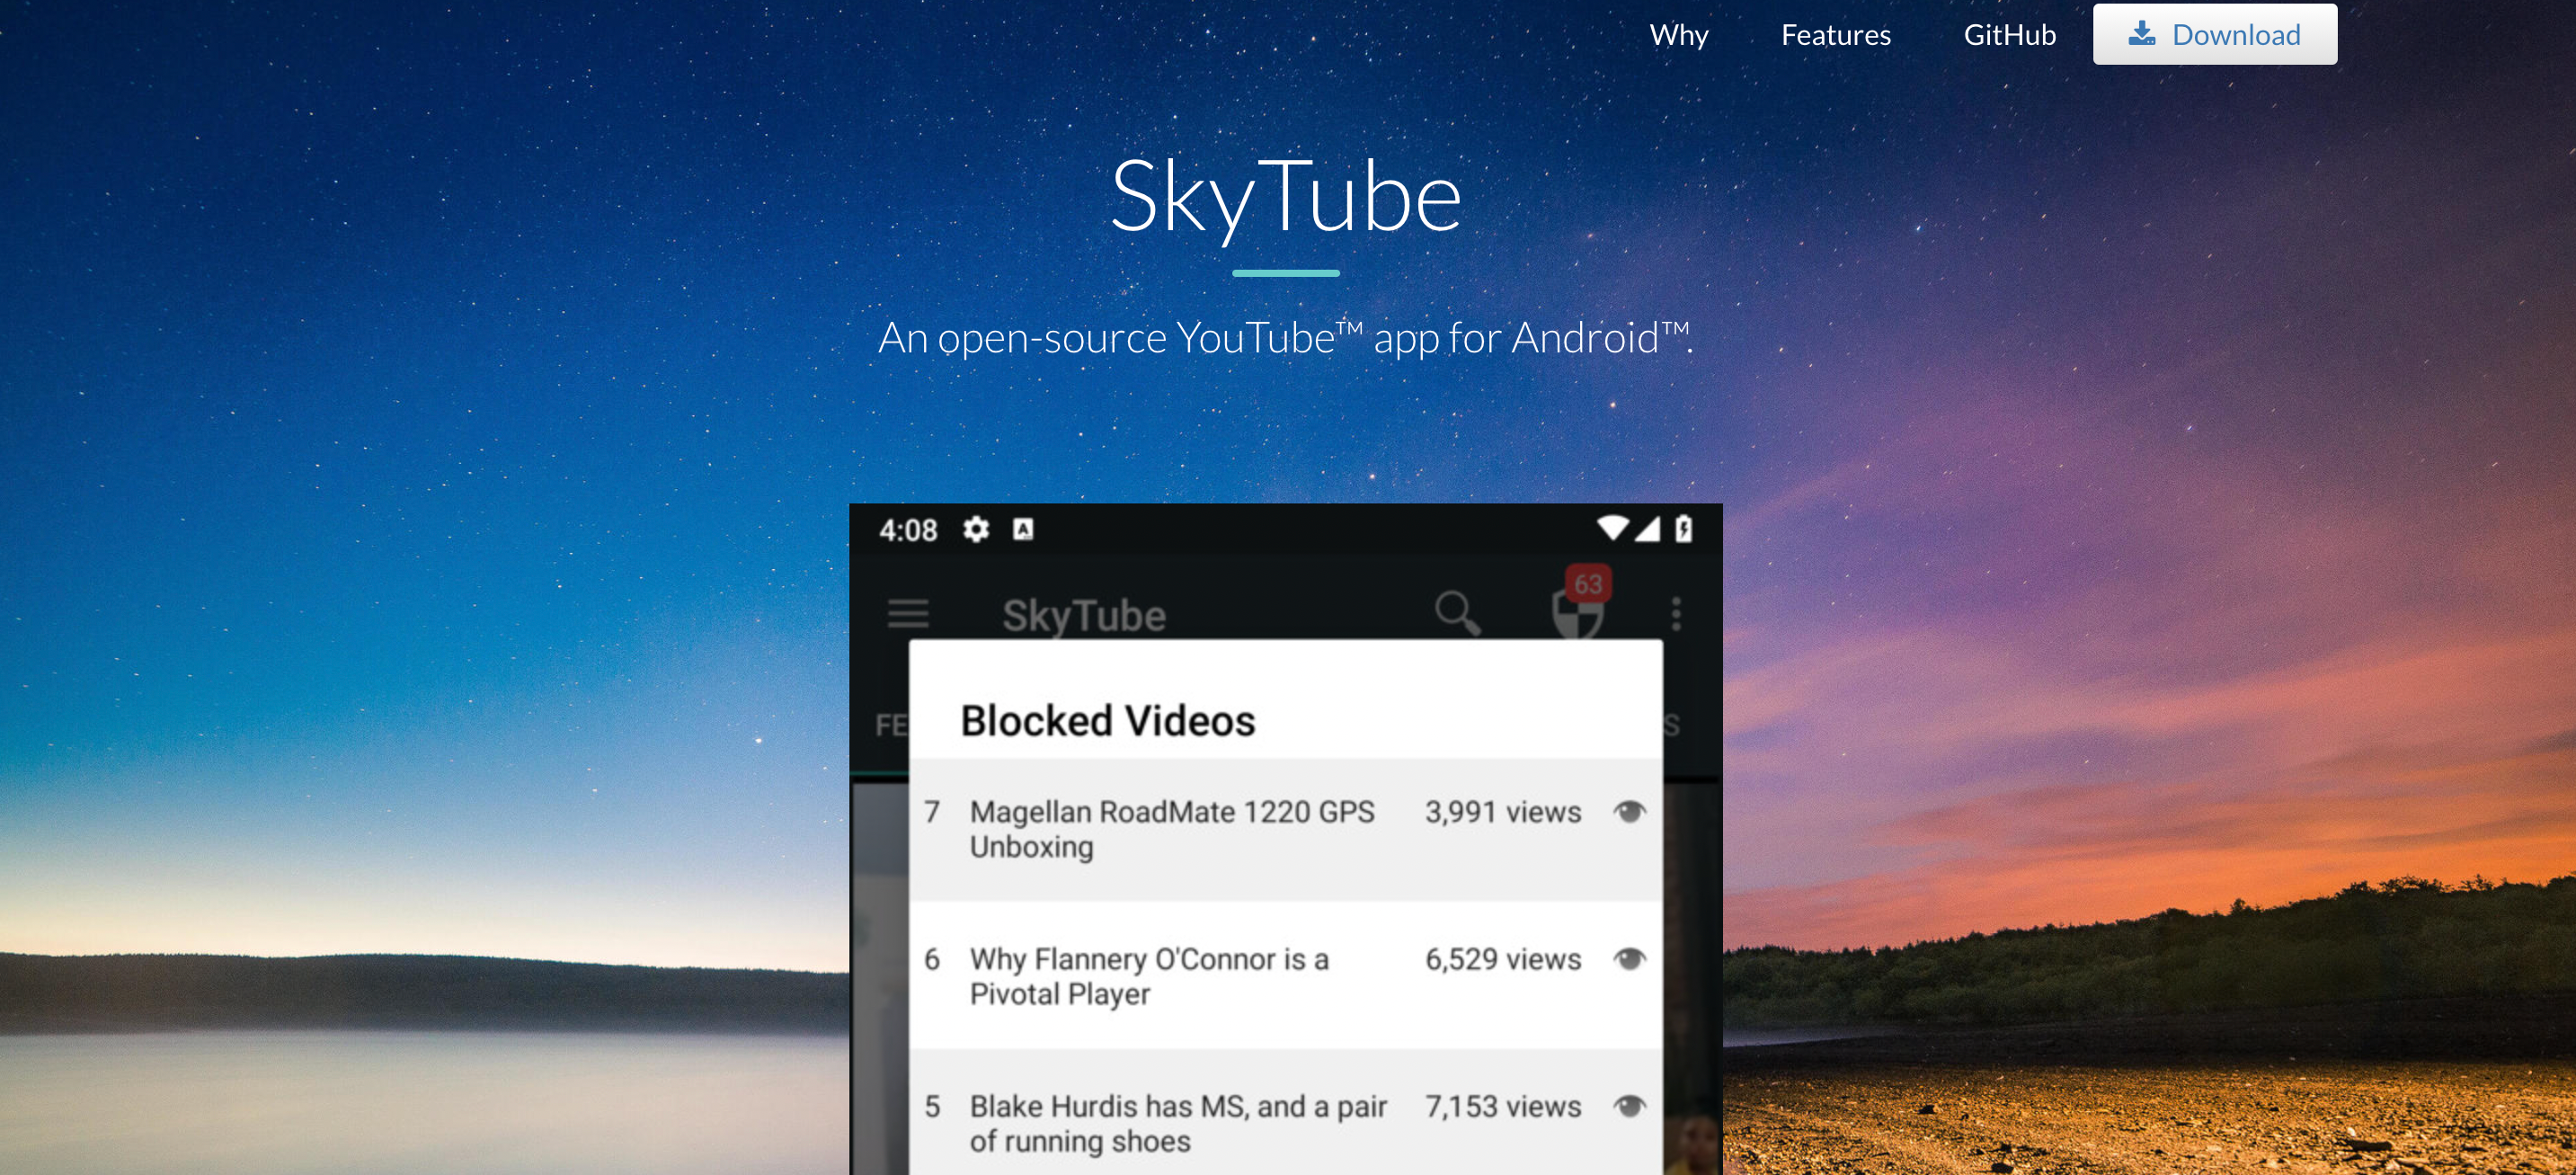 skytube - Come guardare i video di YouTube contrassegnati senza effettuare l’accesso